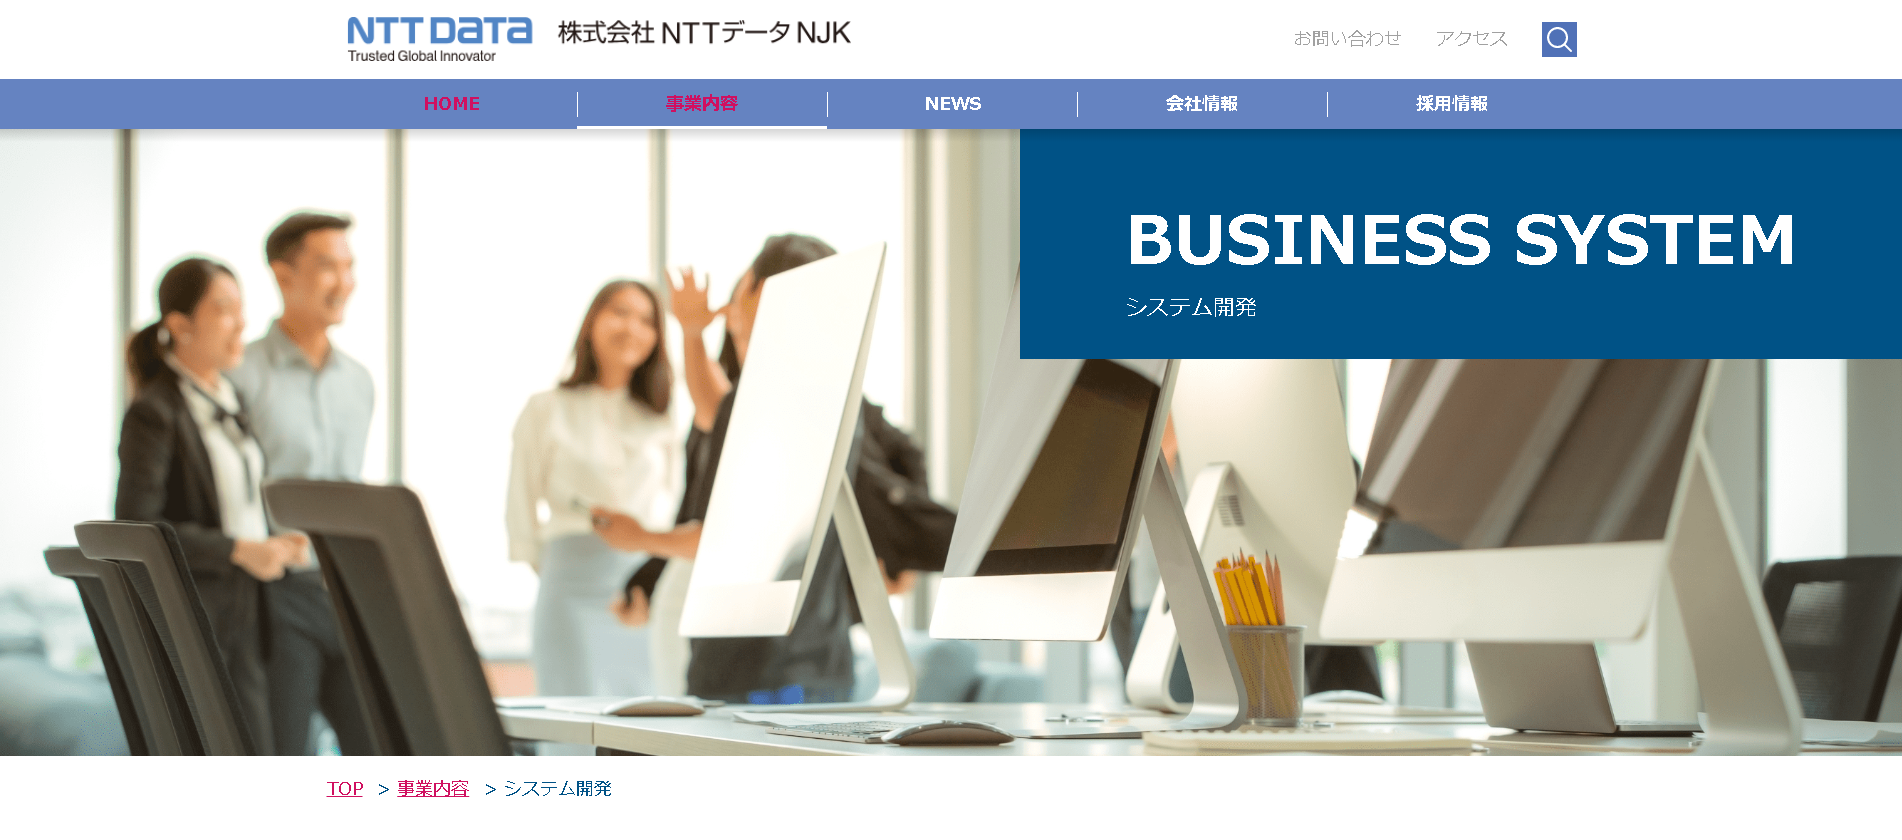 株式会社 NTTデータNJKの株式会社NTTデータNJKサービス